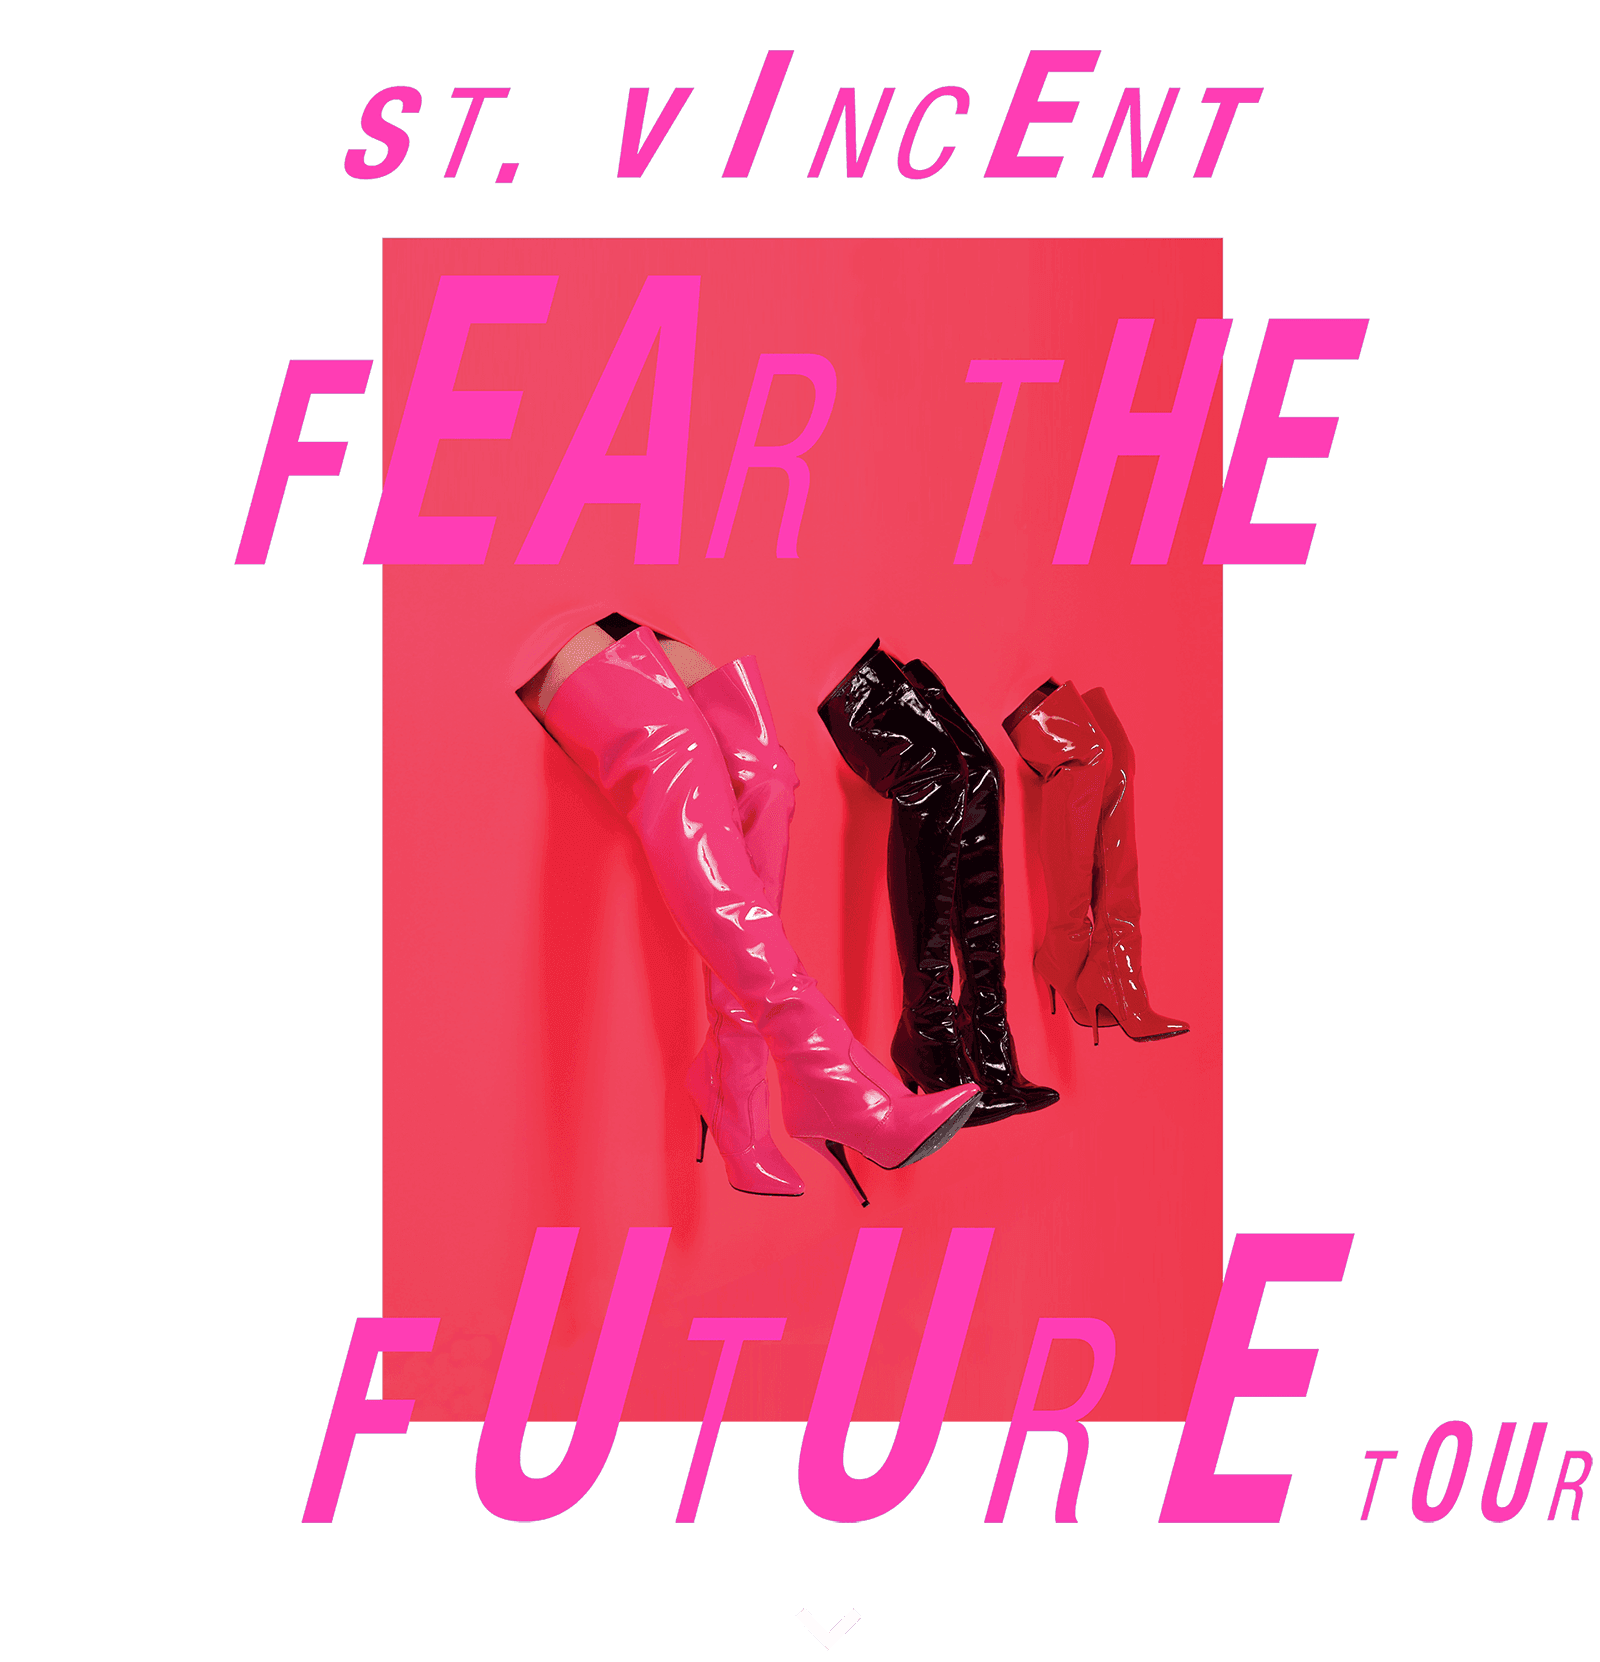 TM Verified Presale Codes For St. Vincent Tour 2017